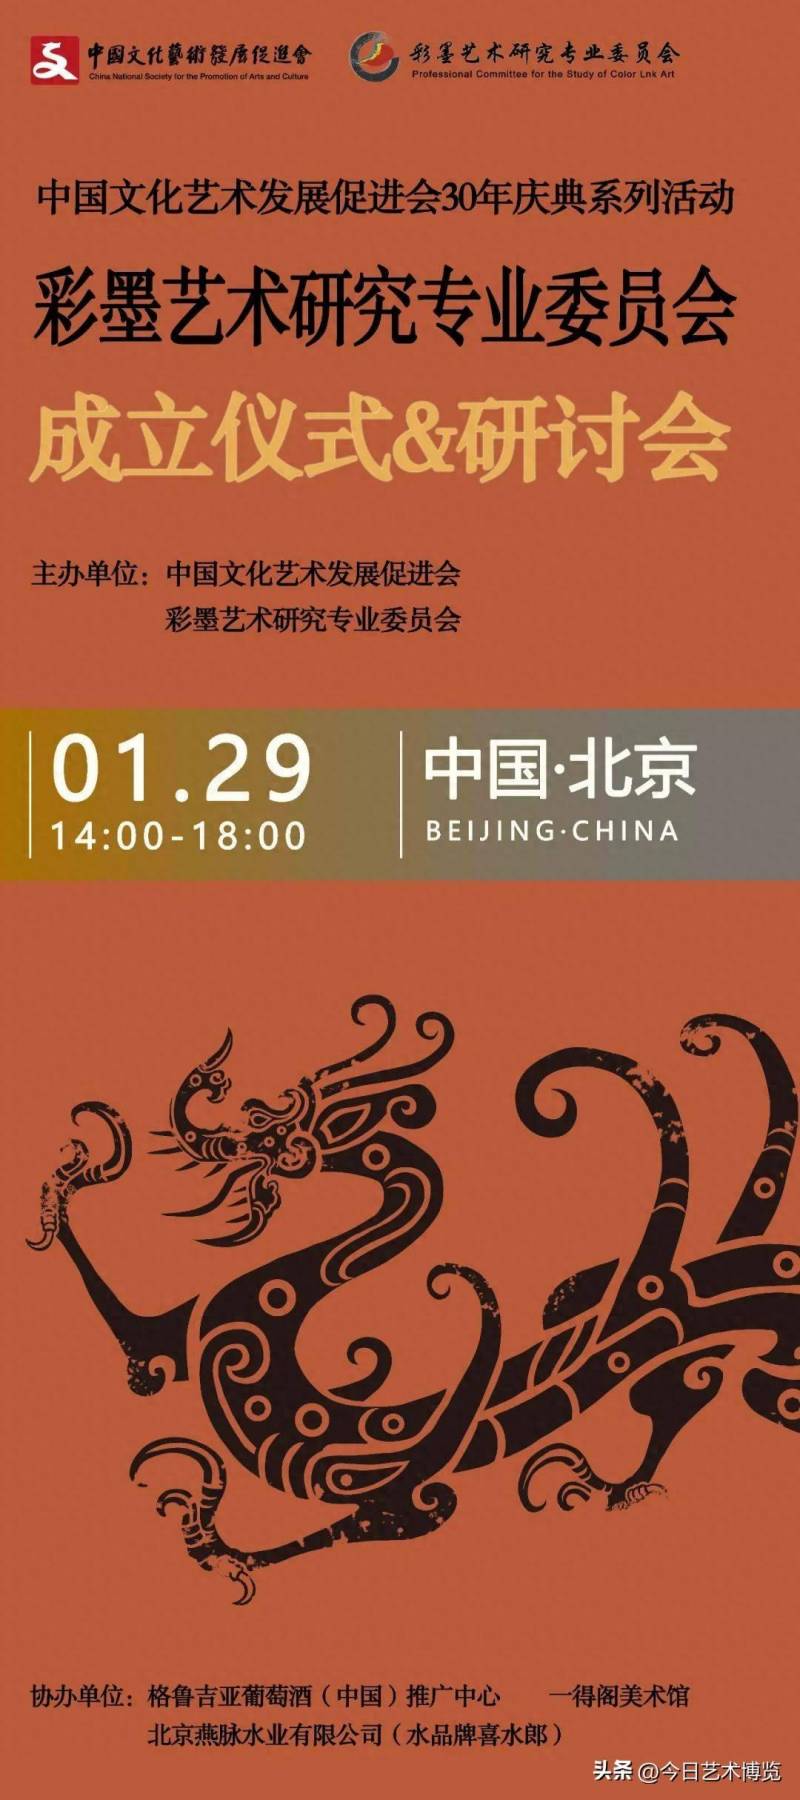 中國文促會彩墨藝術研究專業委員會正式成立 助力傳統藝術創新發展